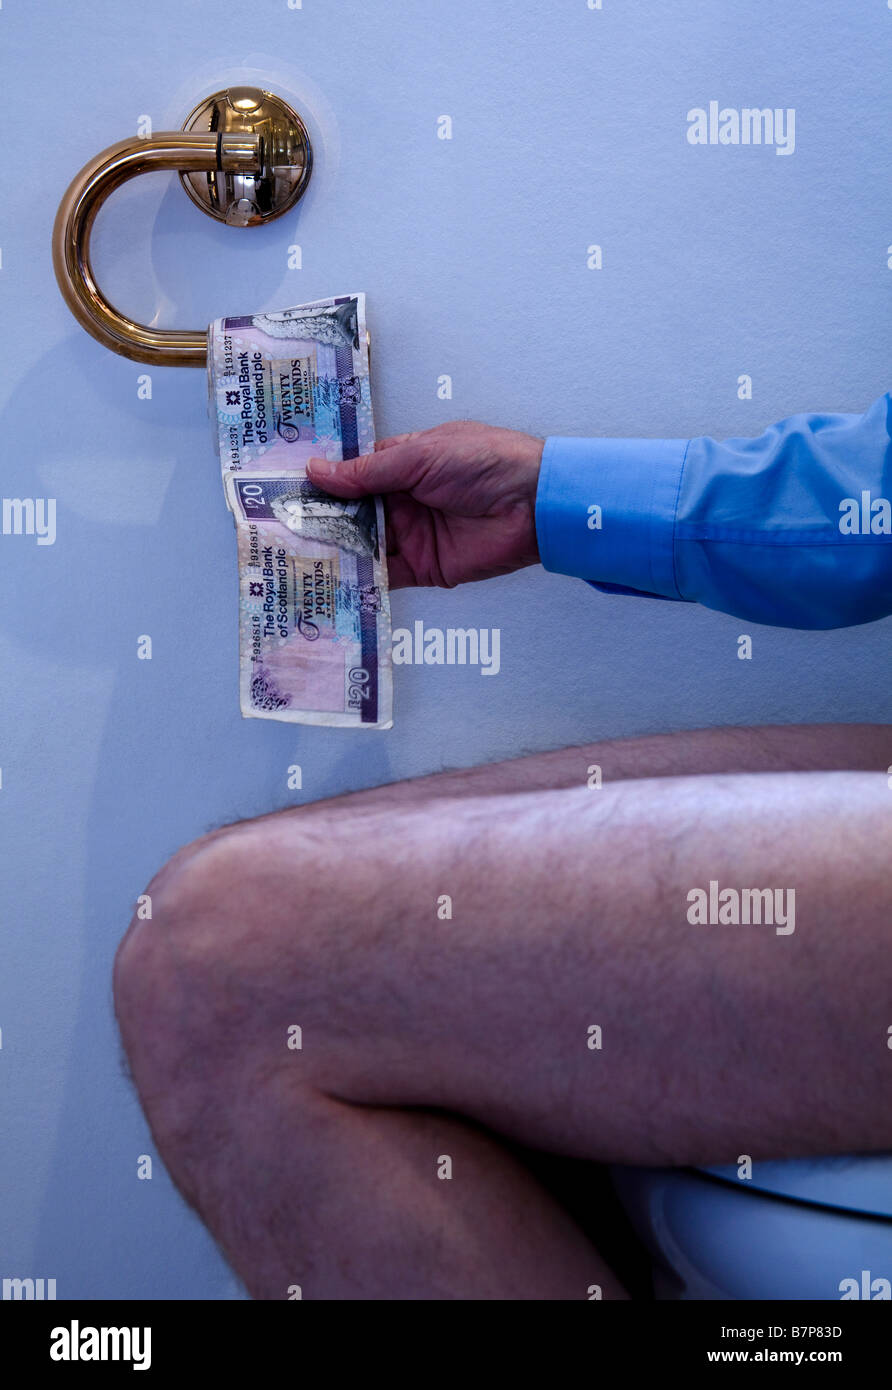 Businessman pulling rouleau de 20 € Royal Bank of Scotland, billets de vingt livres, assis sur la cuvette des toilettes, Écosse, Royaume-Uni, Europ Banque D'Images